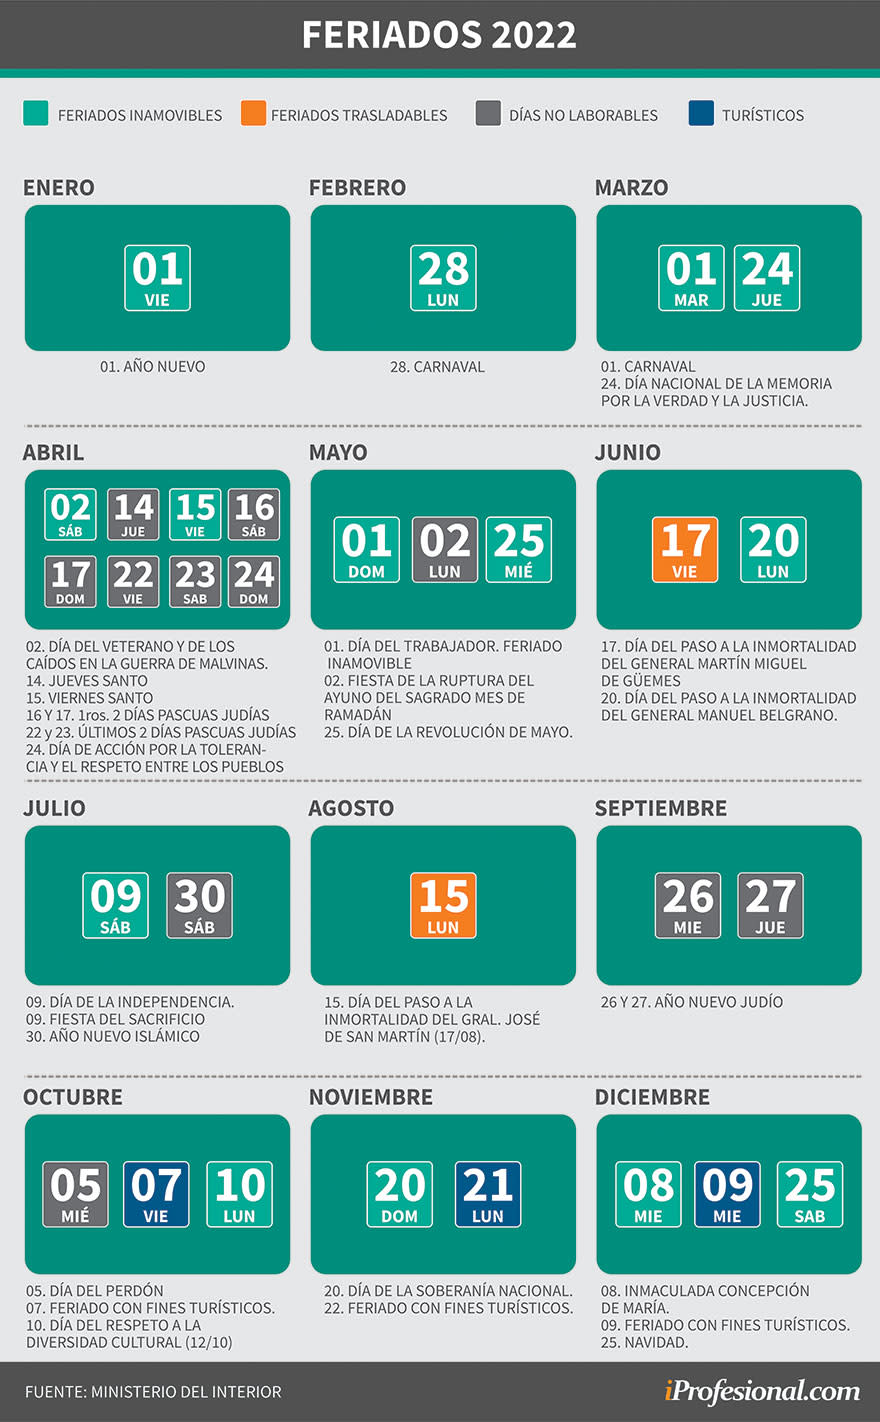 Todos los feriados del calendario nacional 2022